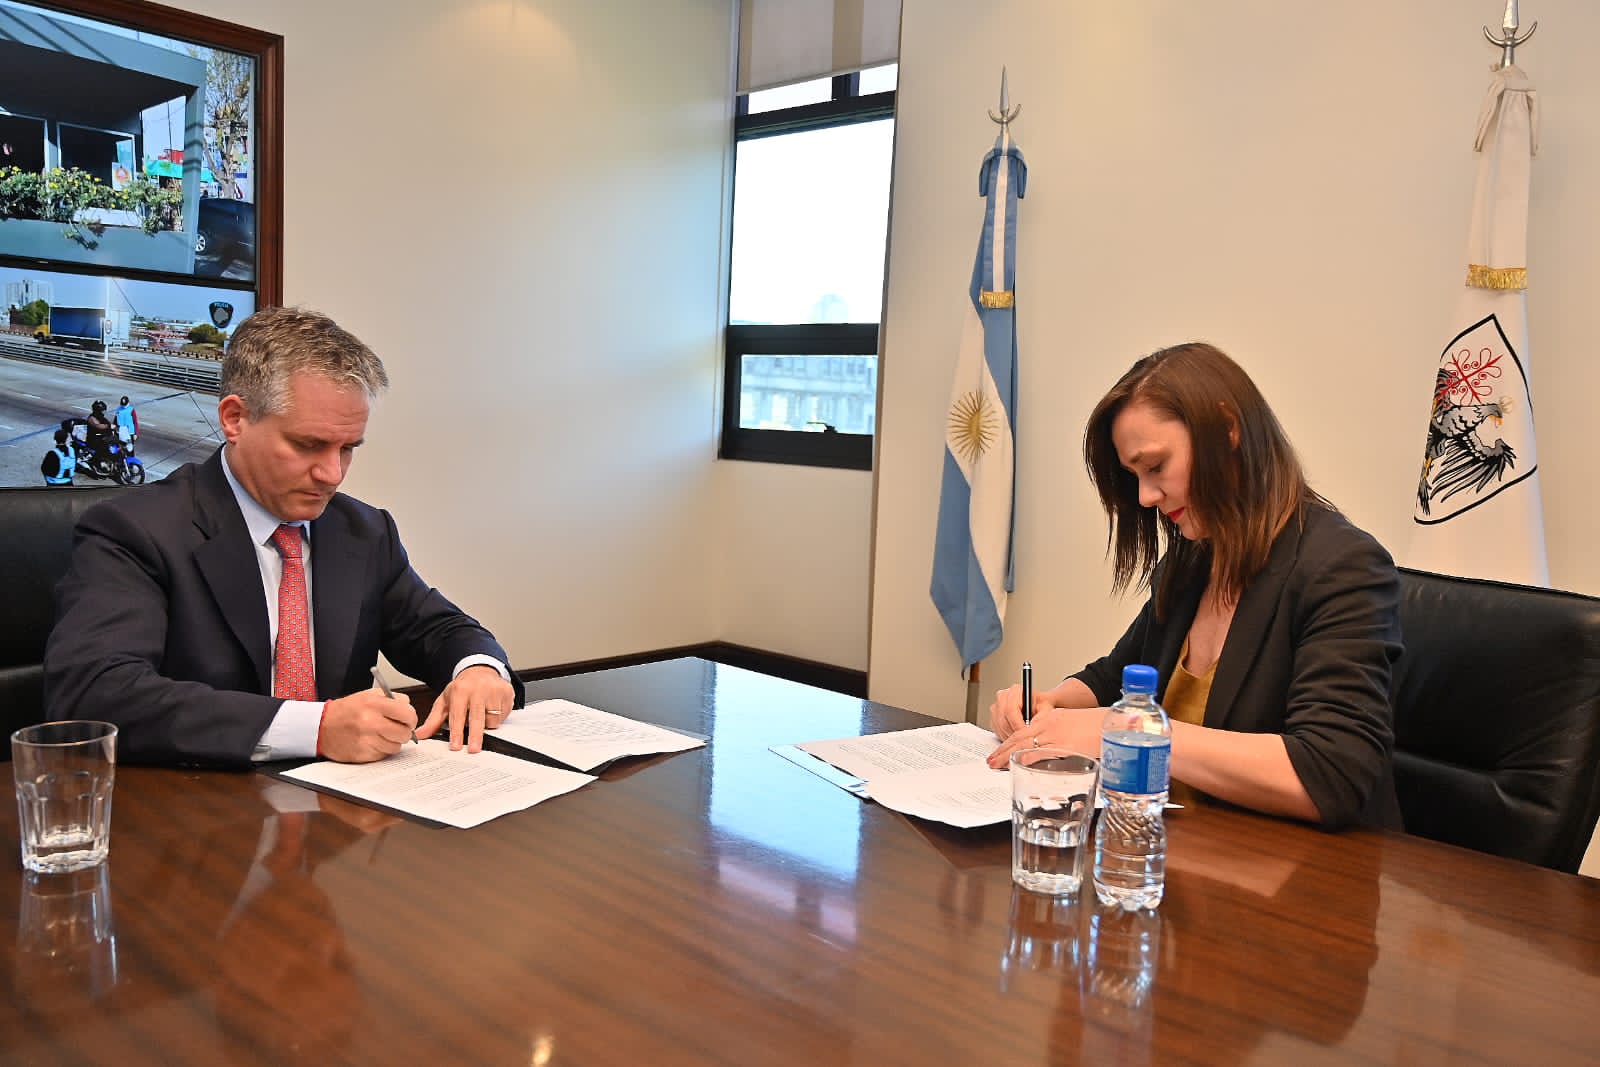 Los ministros Marcelo D'Alessandro y Betiana Minor el 4 de noviembre, cuando se firmó el convenio que hoy repudió el senador Doñate.